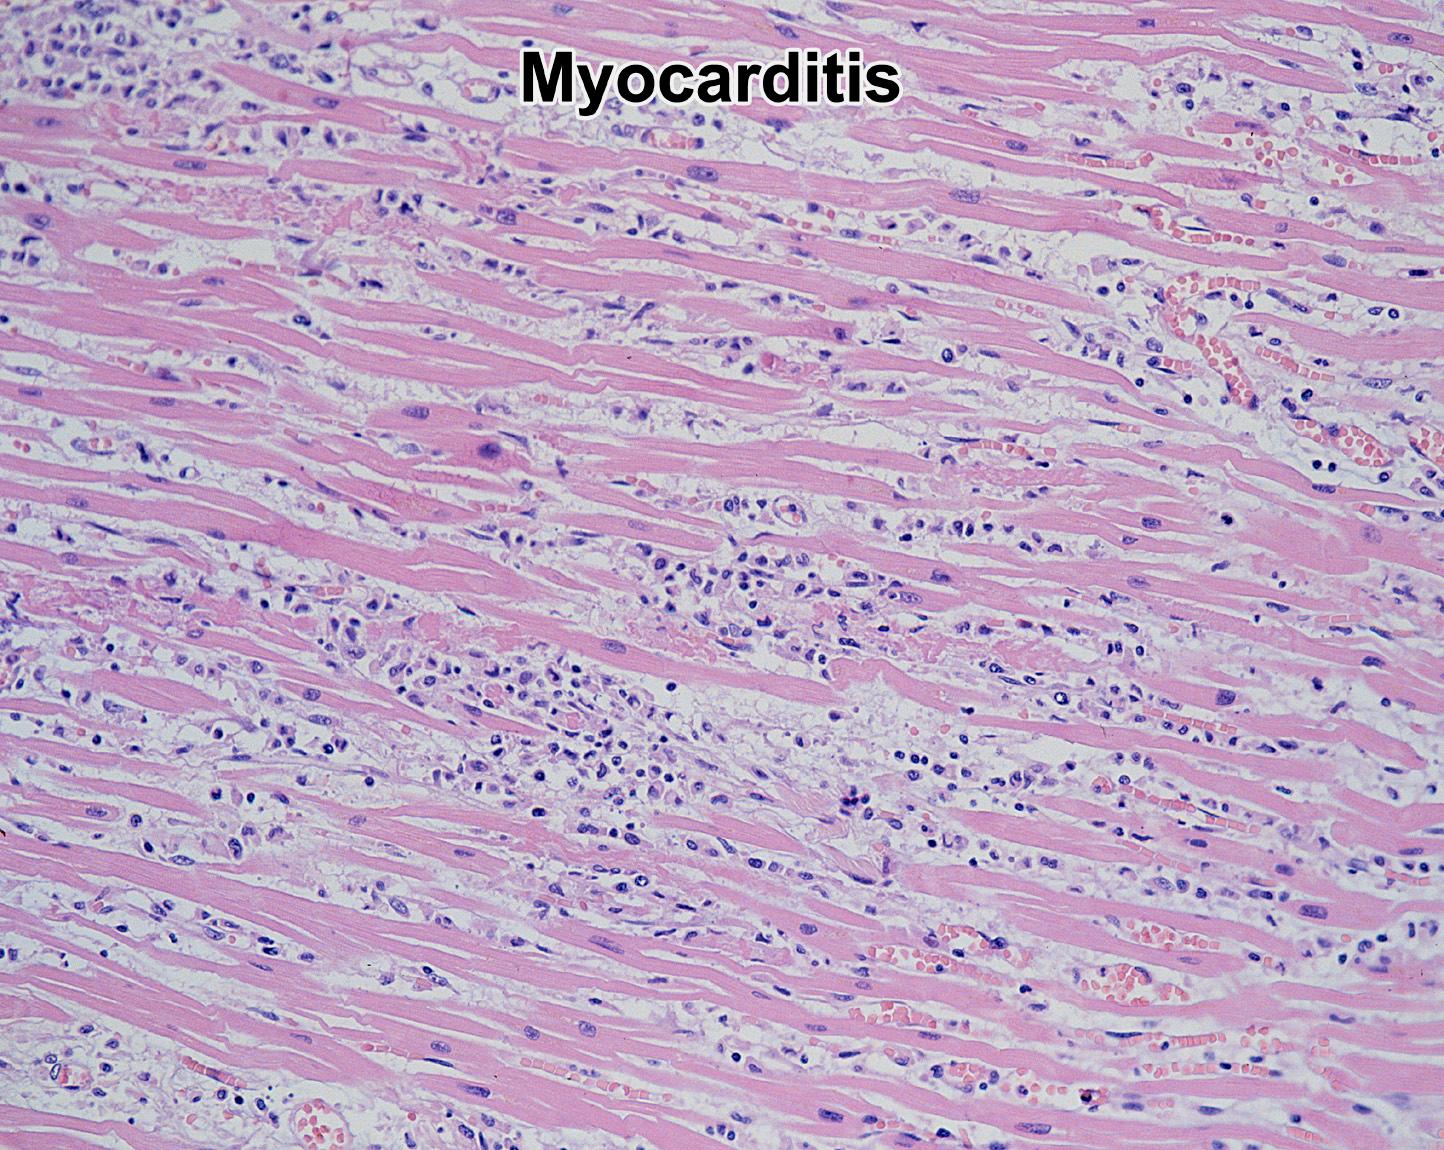 Virális myocarditis: